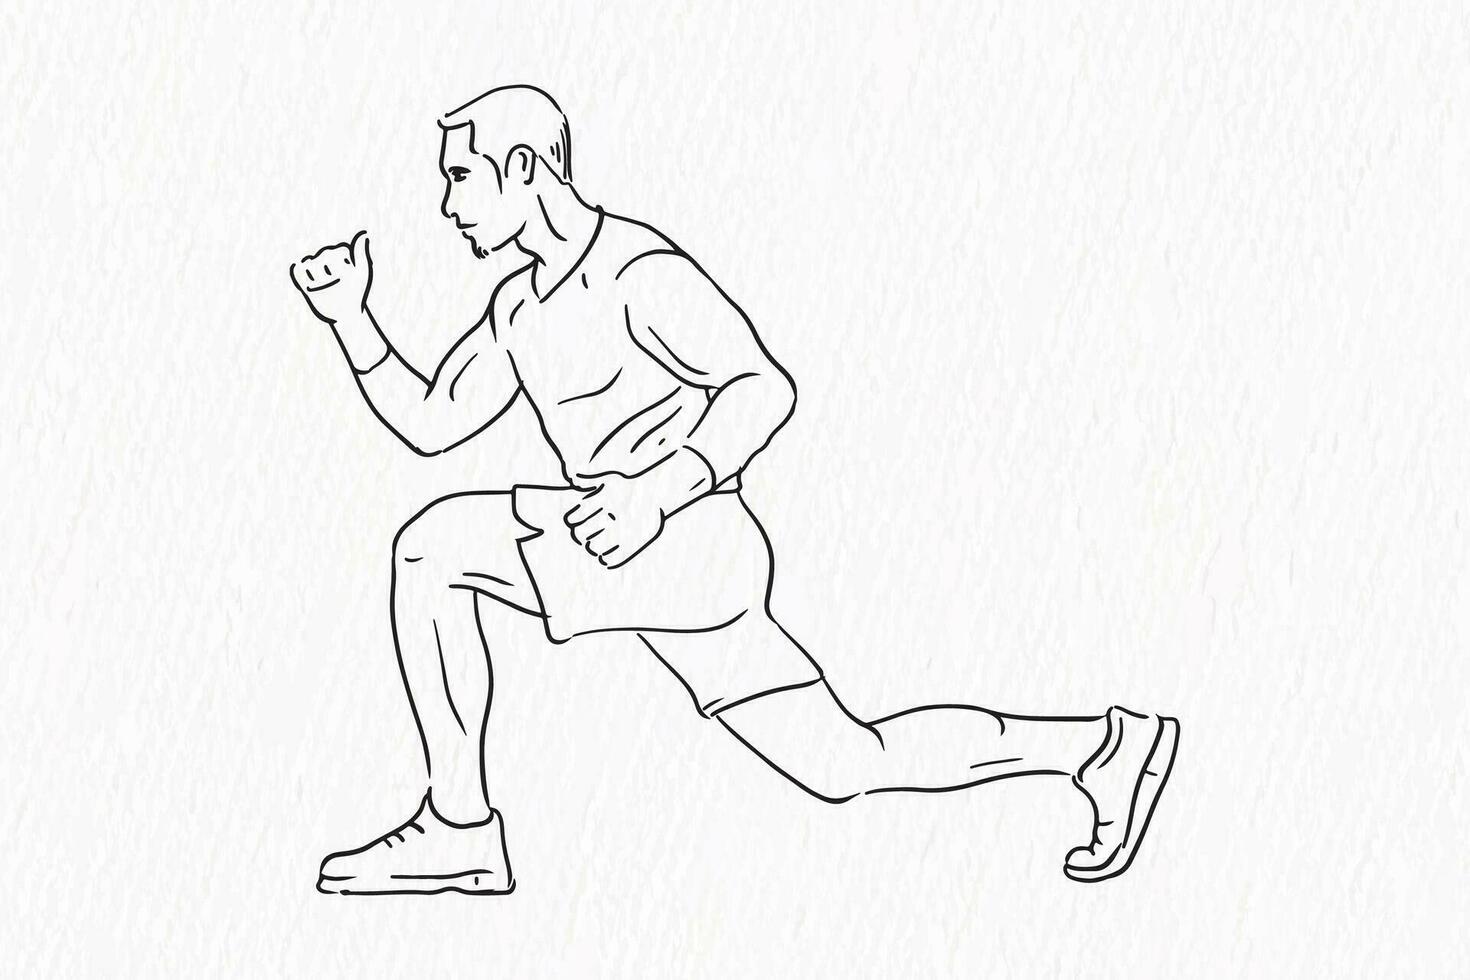 uno línea dibujo de masculino gimnasio aptitud a mano rutina de ejercicio vector ilustración